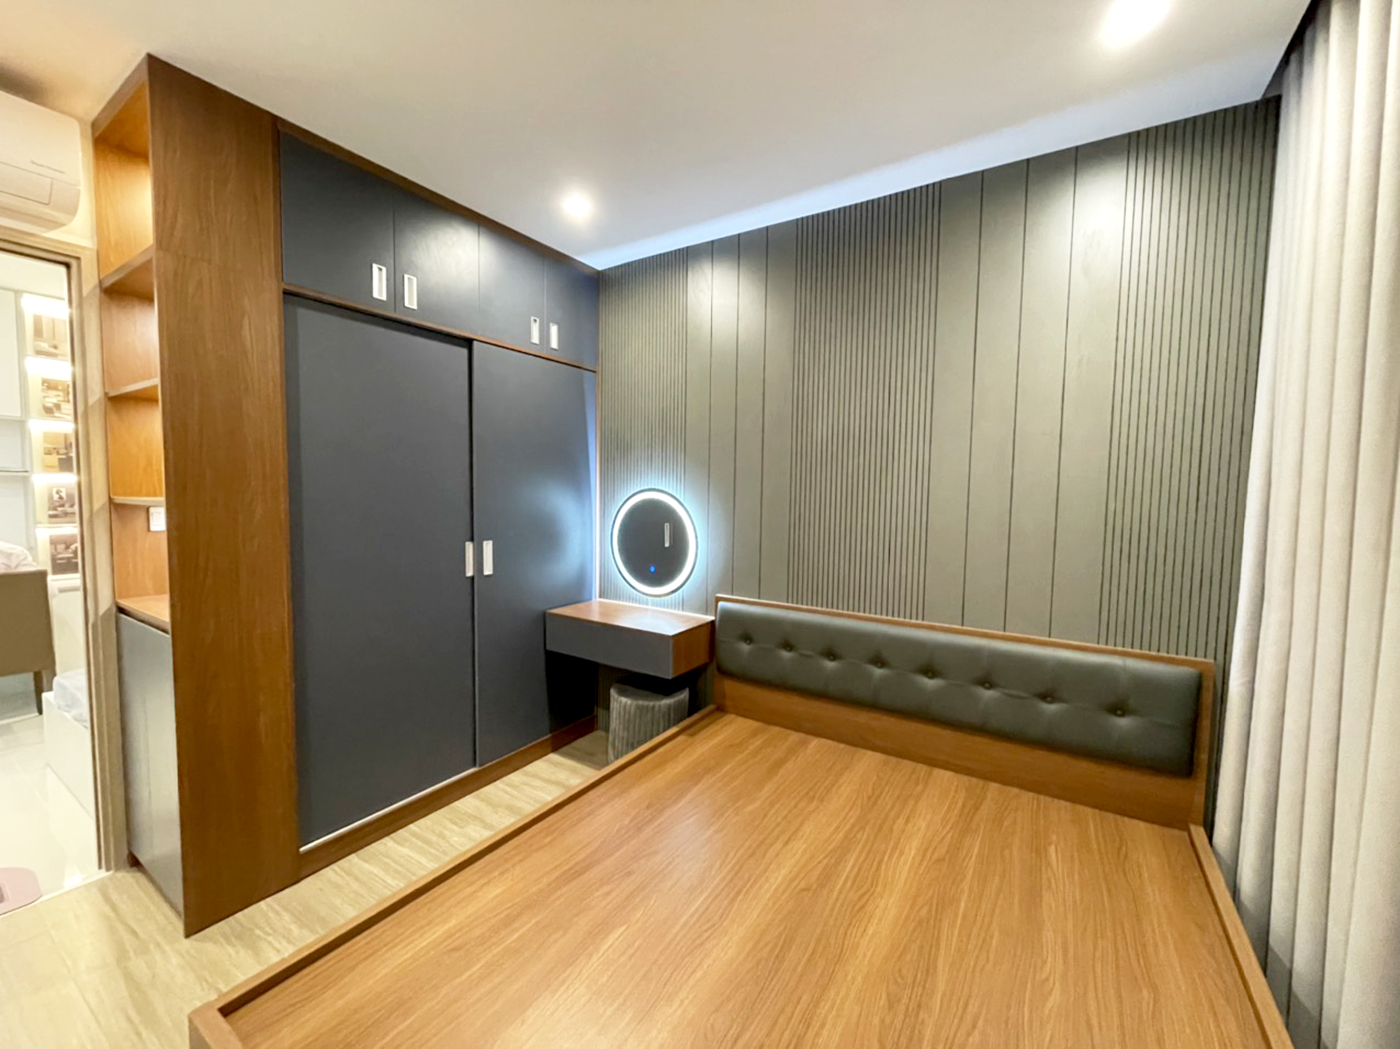 Phòng ngủ, phong cách Hiện đại Modern, hoàn thiện nội thất, căn hộ The Origami